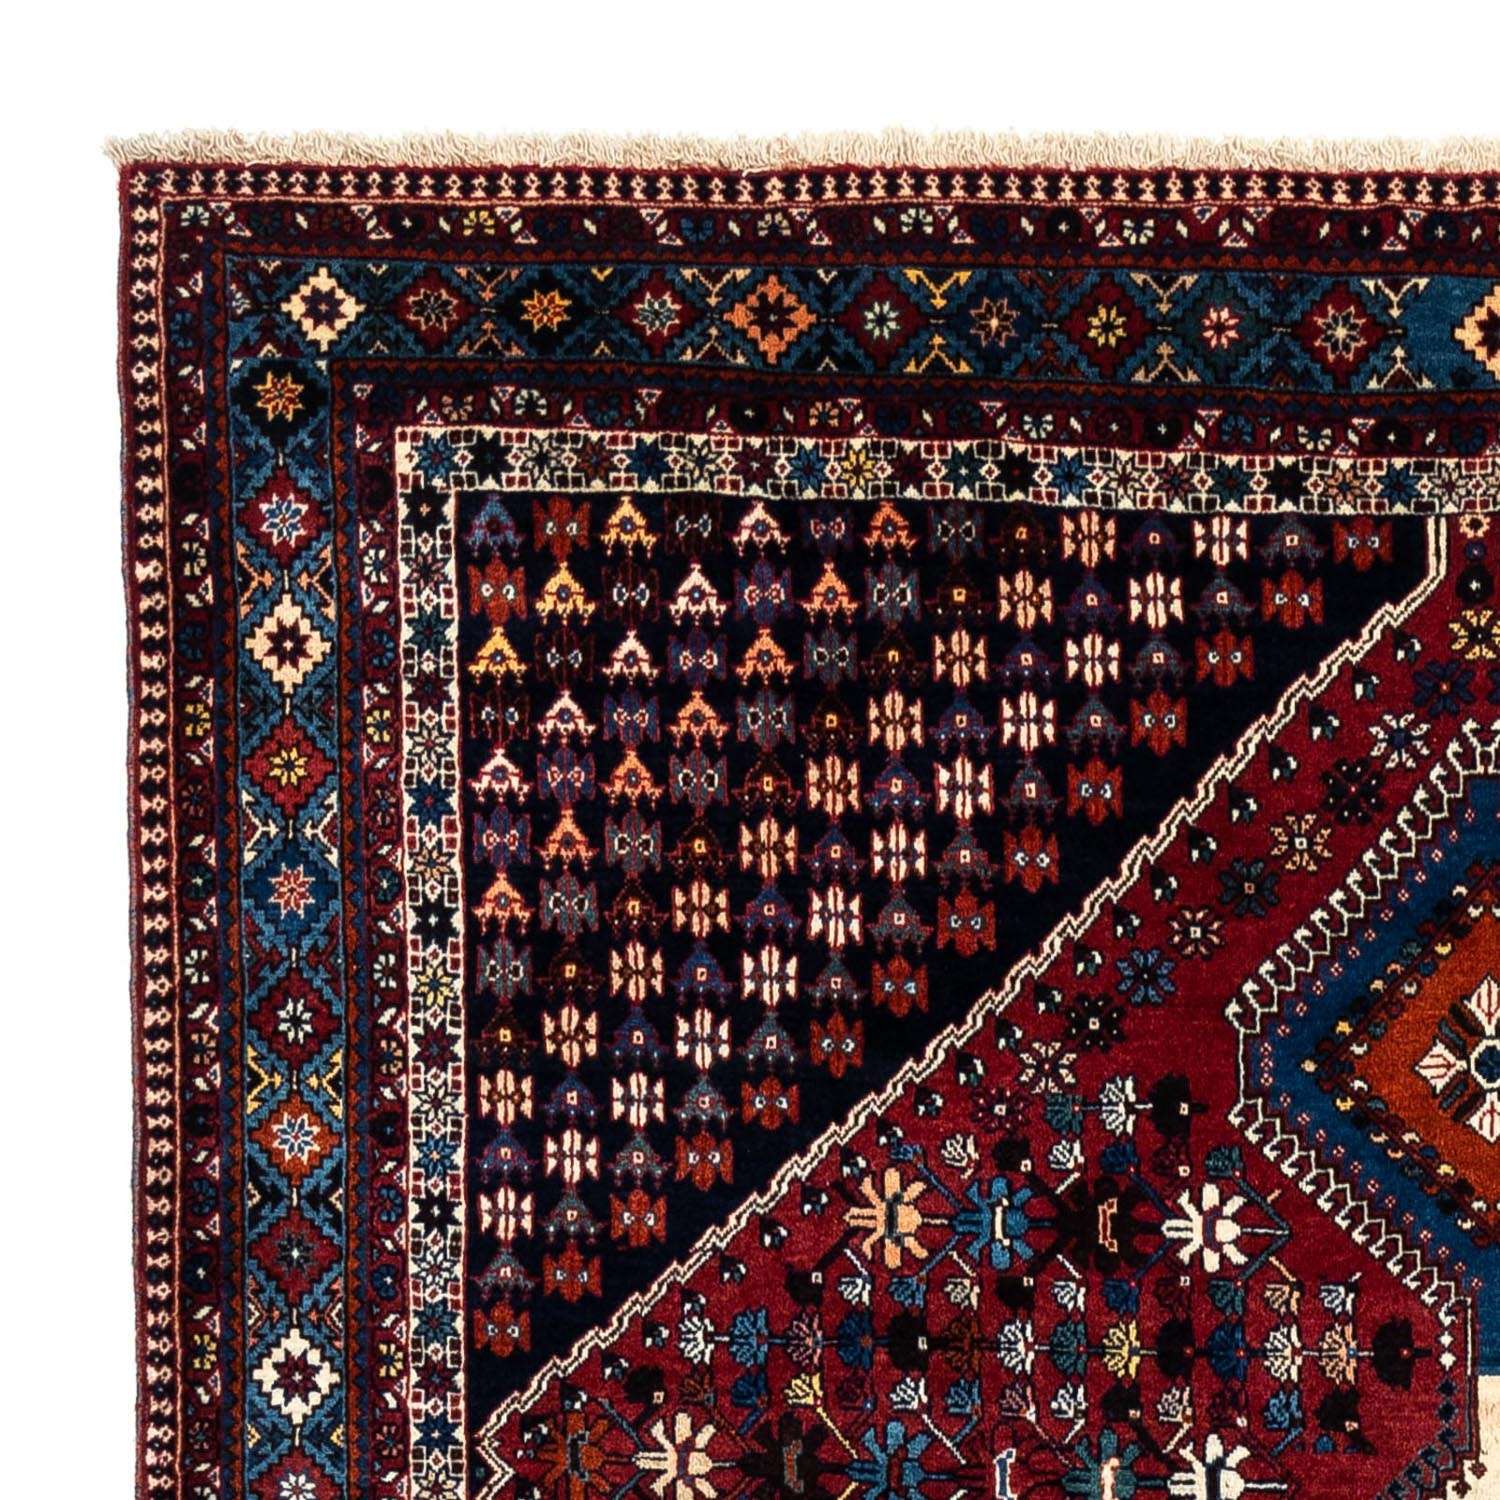 Tapis persan - Nomadic - 320 x 205 cm - rouge foncé